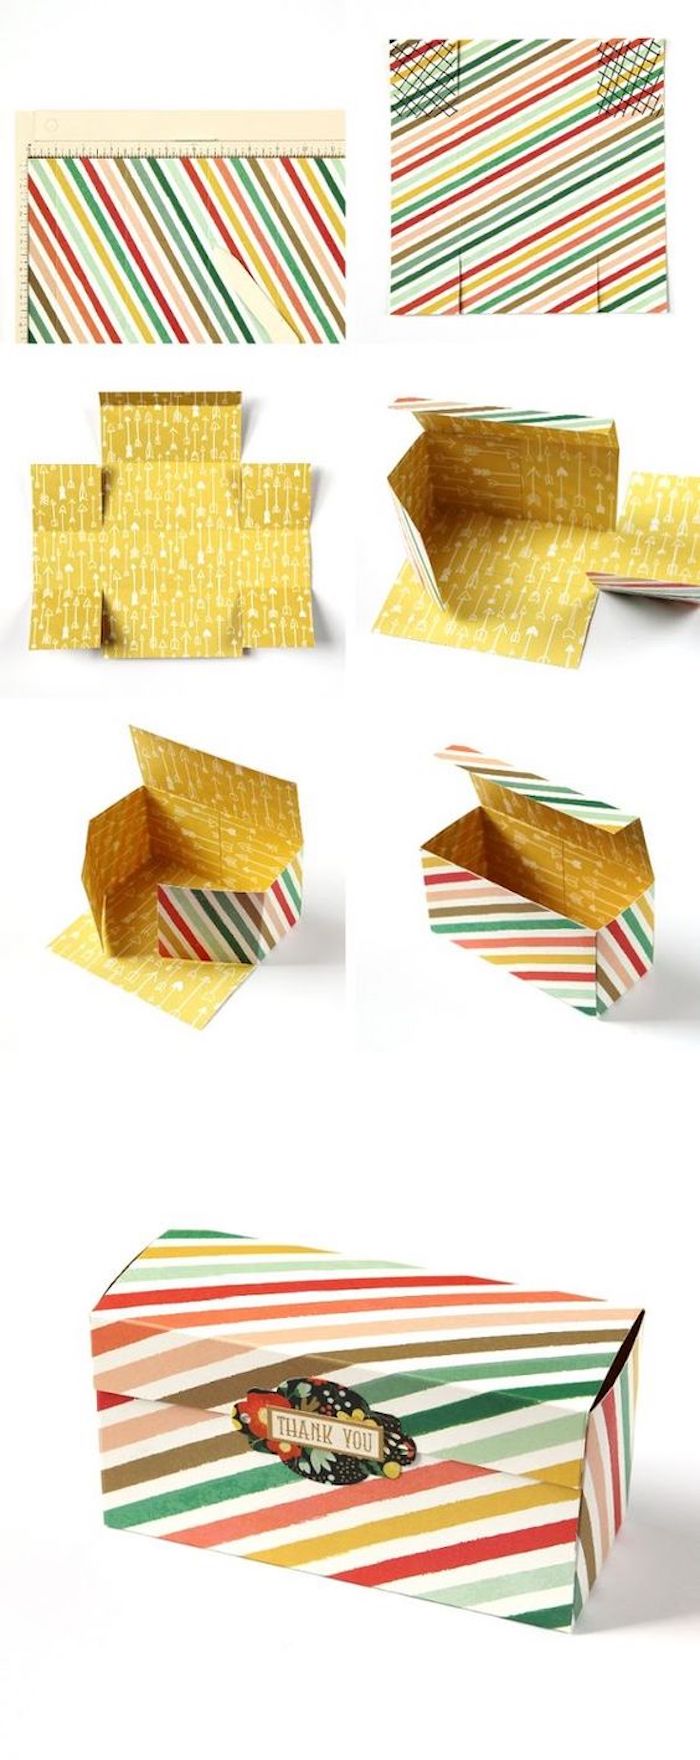 Pappschachteln - eine kleine Schachtel in vielen Farben selber falten - eine Anleitung